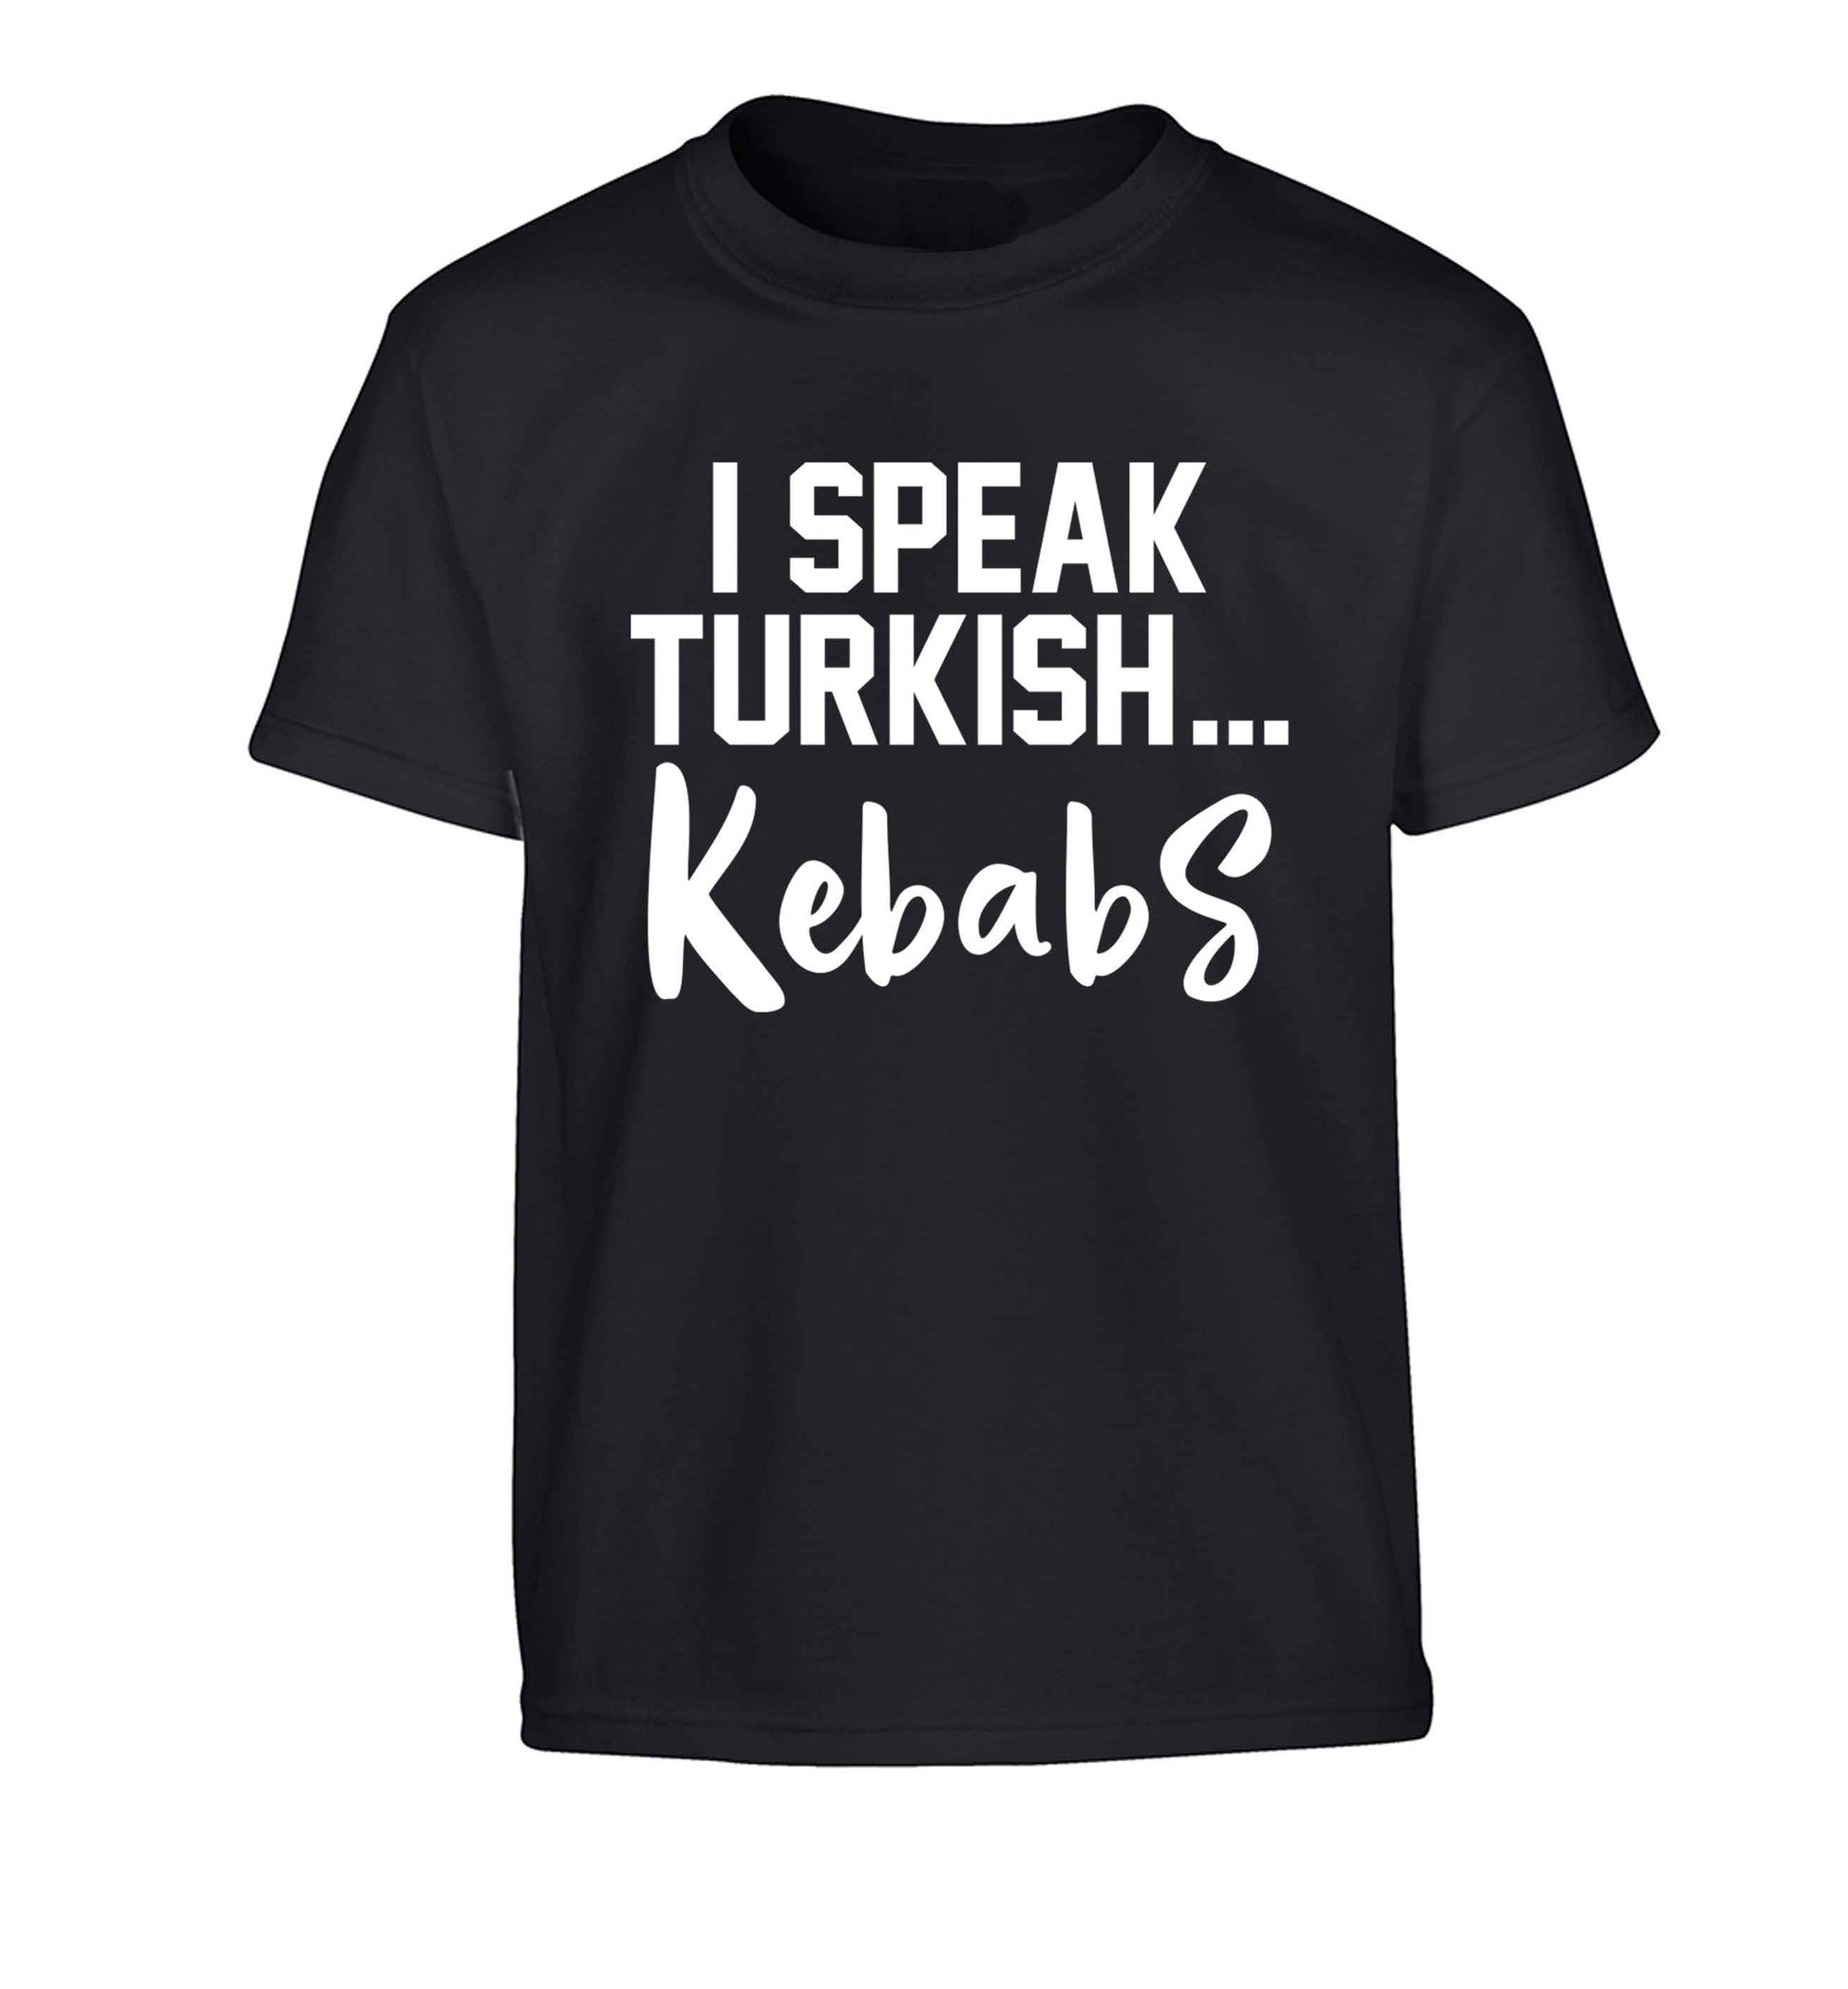 I speak Turkish...kebabs Children's black Tshirt 12-13 Years